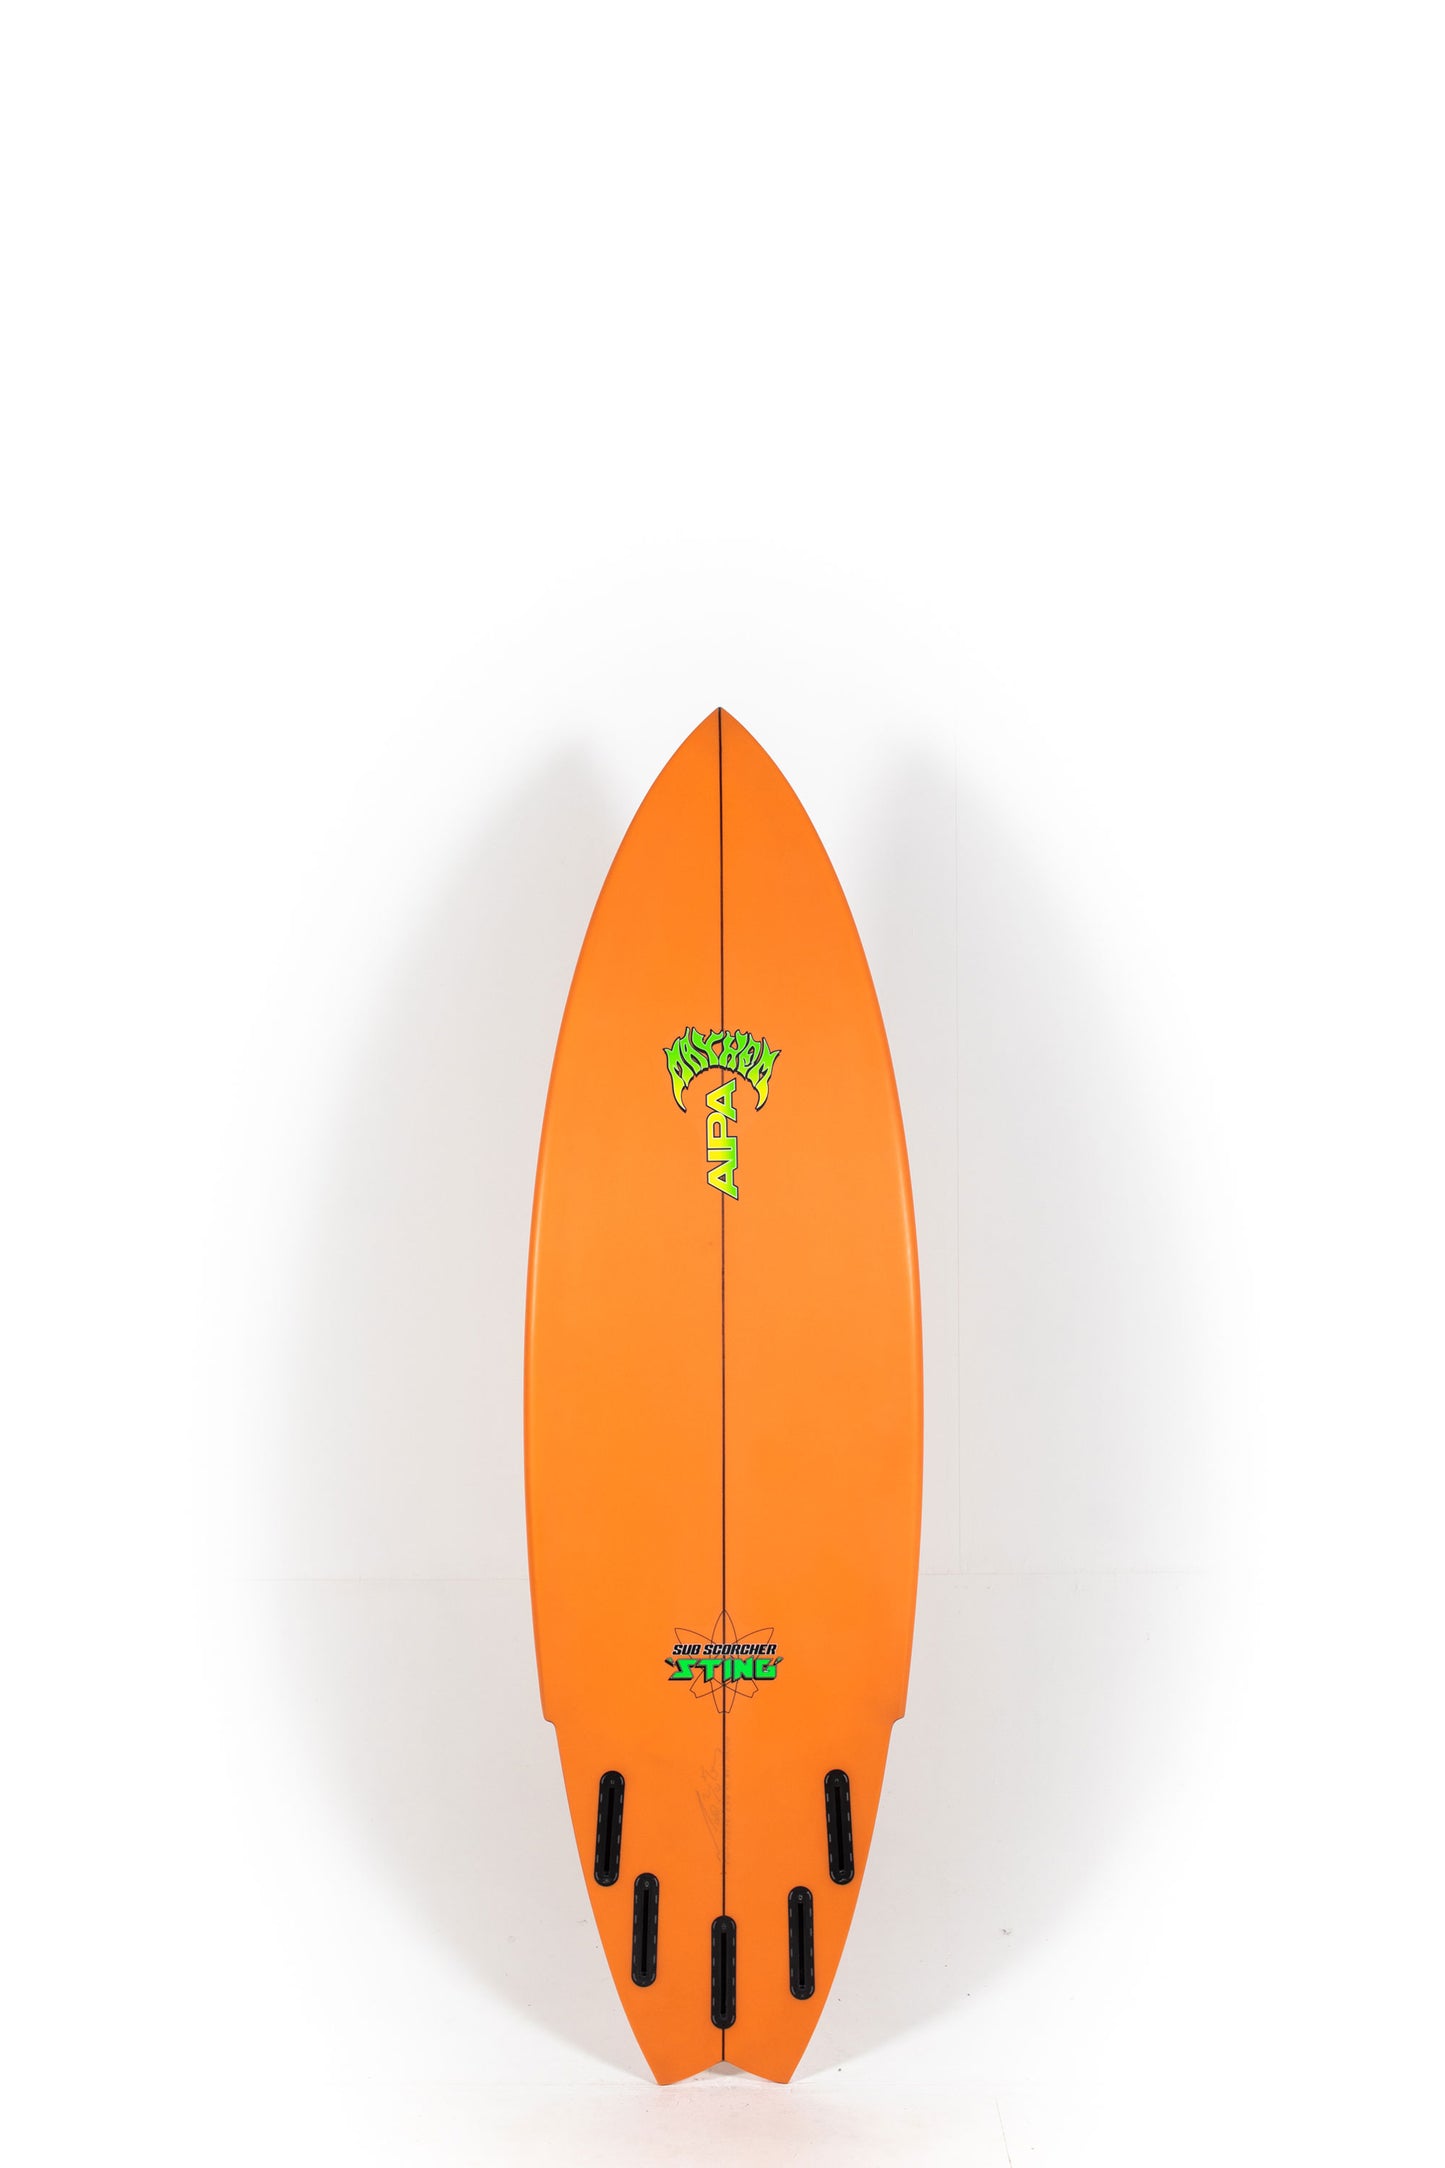 Pukas Surf Shop - Lost Surfboard - SUB SCORCHER STING by Mayhem x Brink - 5’11” x 20,25" x 2.58" - 32.75L - MA00039